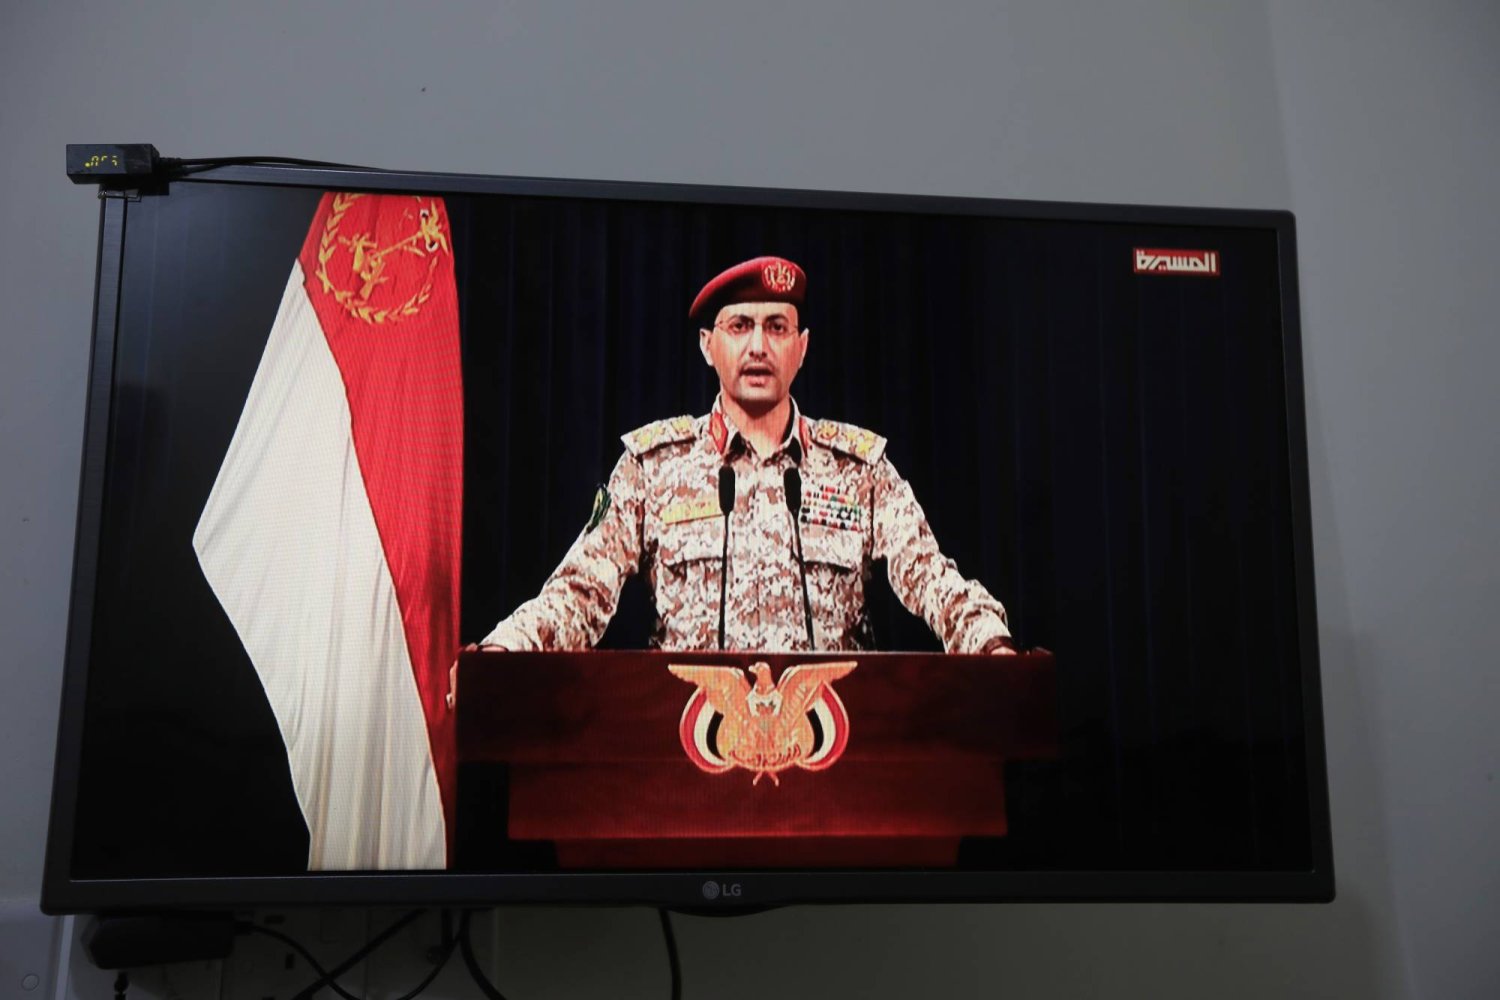 المتحدث العسكري باسم الحوثيين يحيى سريع يلقي بياناً مصوراً عن هجمات جماعته (إ.ب.أ)